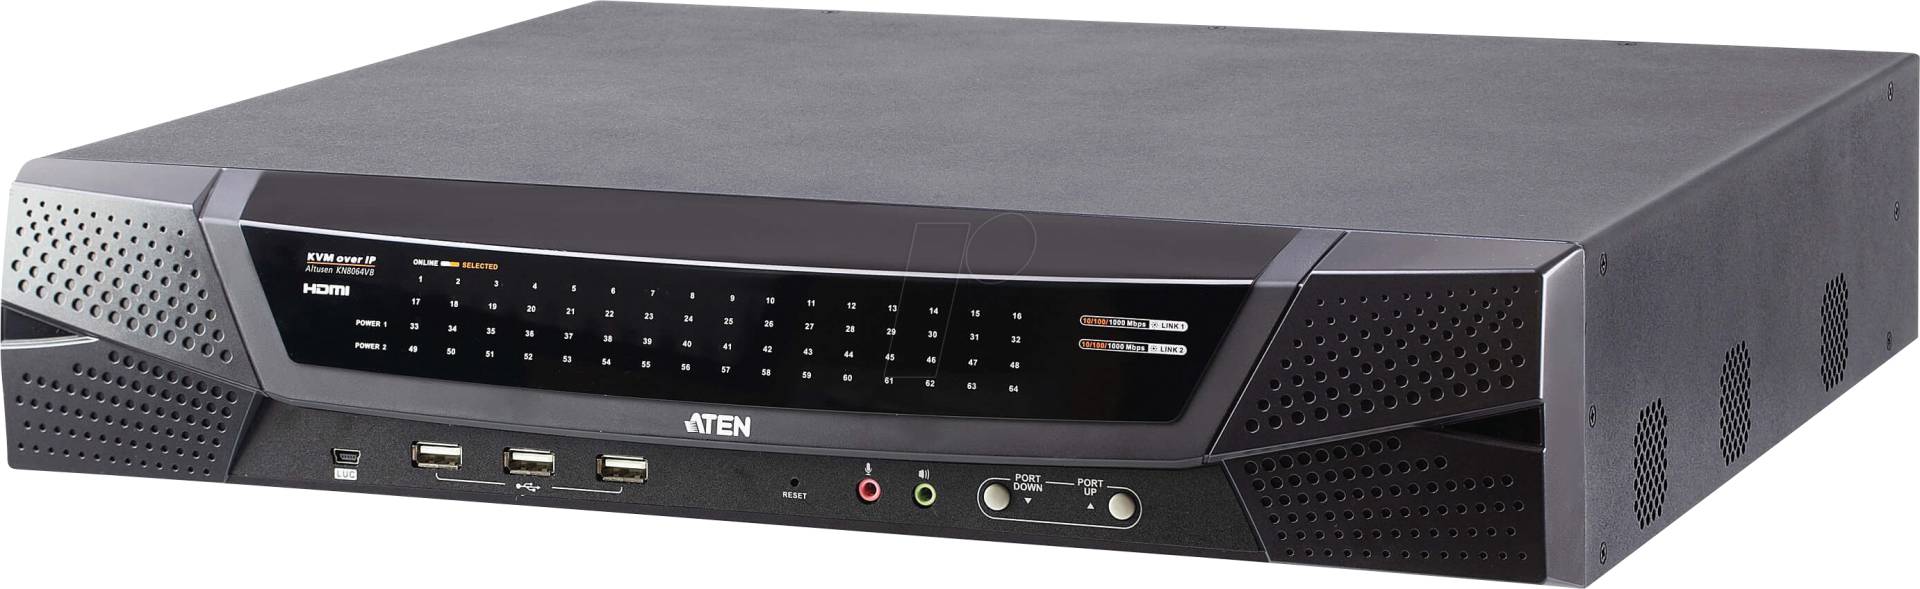 ATEN KN8064VB - 64-Port KVM over IP Switch, HDMI, USB von Aten